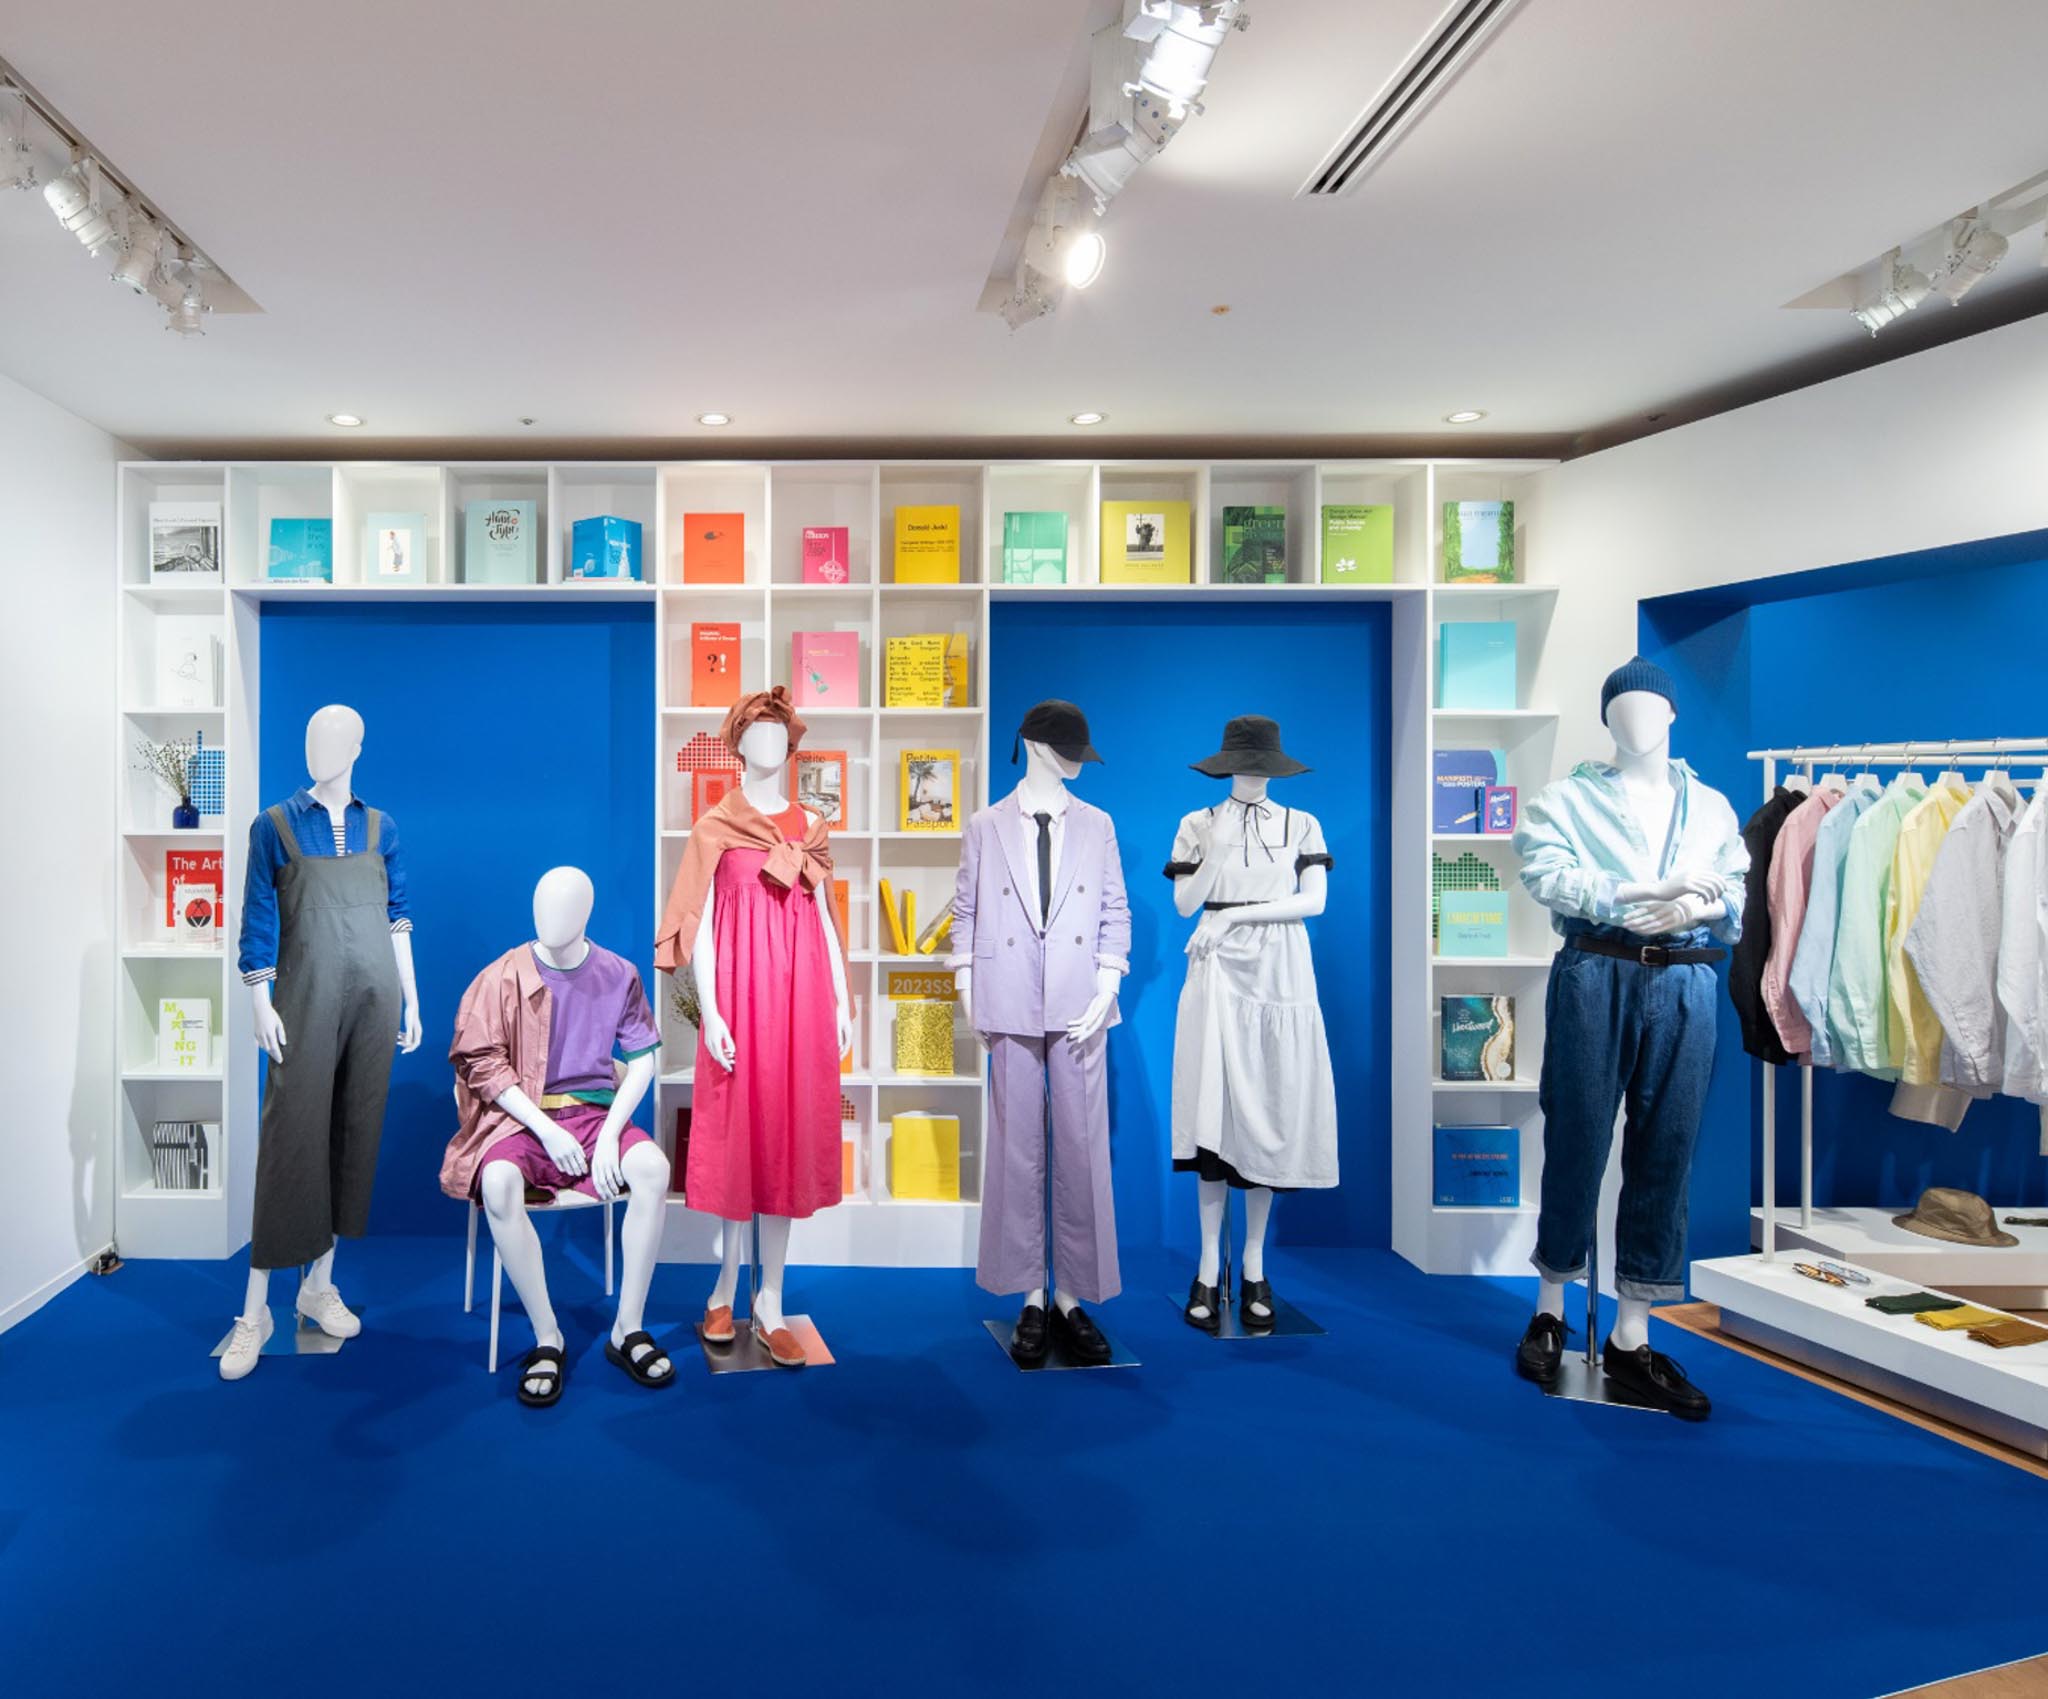 UNIQLO mang đến Triển lãm giới thiệu BST Lifewear Xuân/Hè 2023 với chủ đề “The Art of Everyday Life” tại Bảo tàng Mỹ thuật TP. Hồ Chí Minh